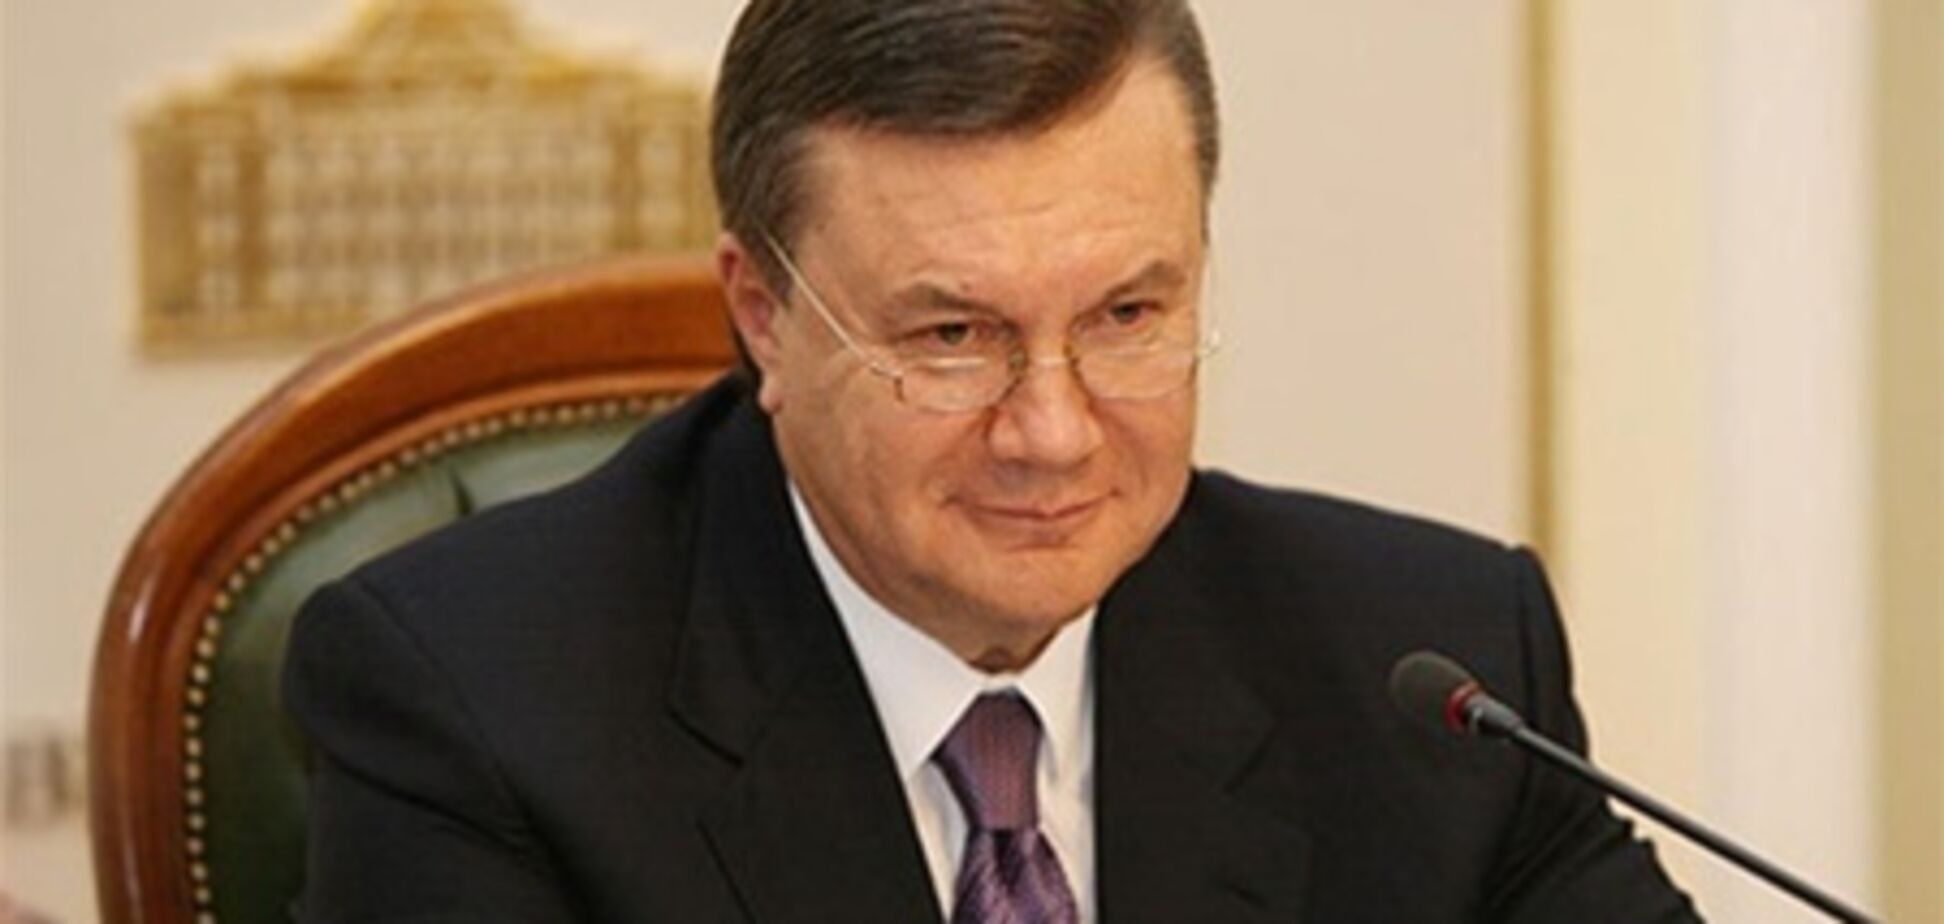 Оппозиция будет настаивать на публичной встрече с Януковичем